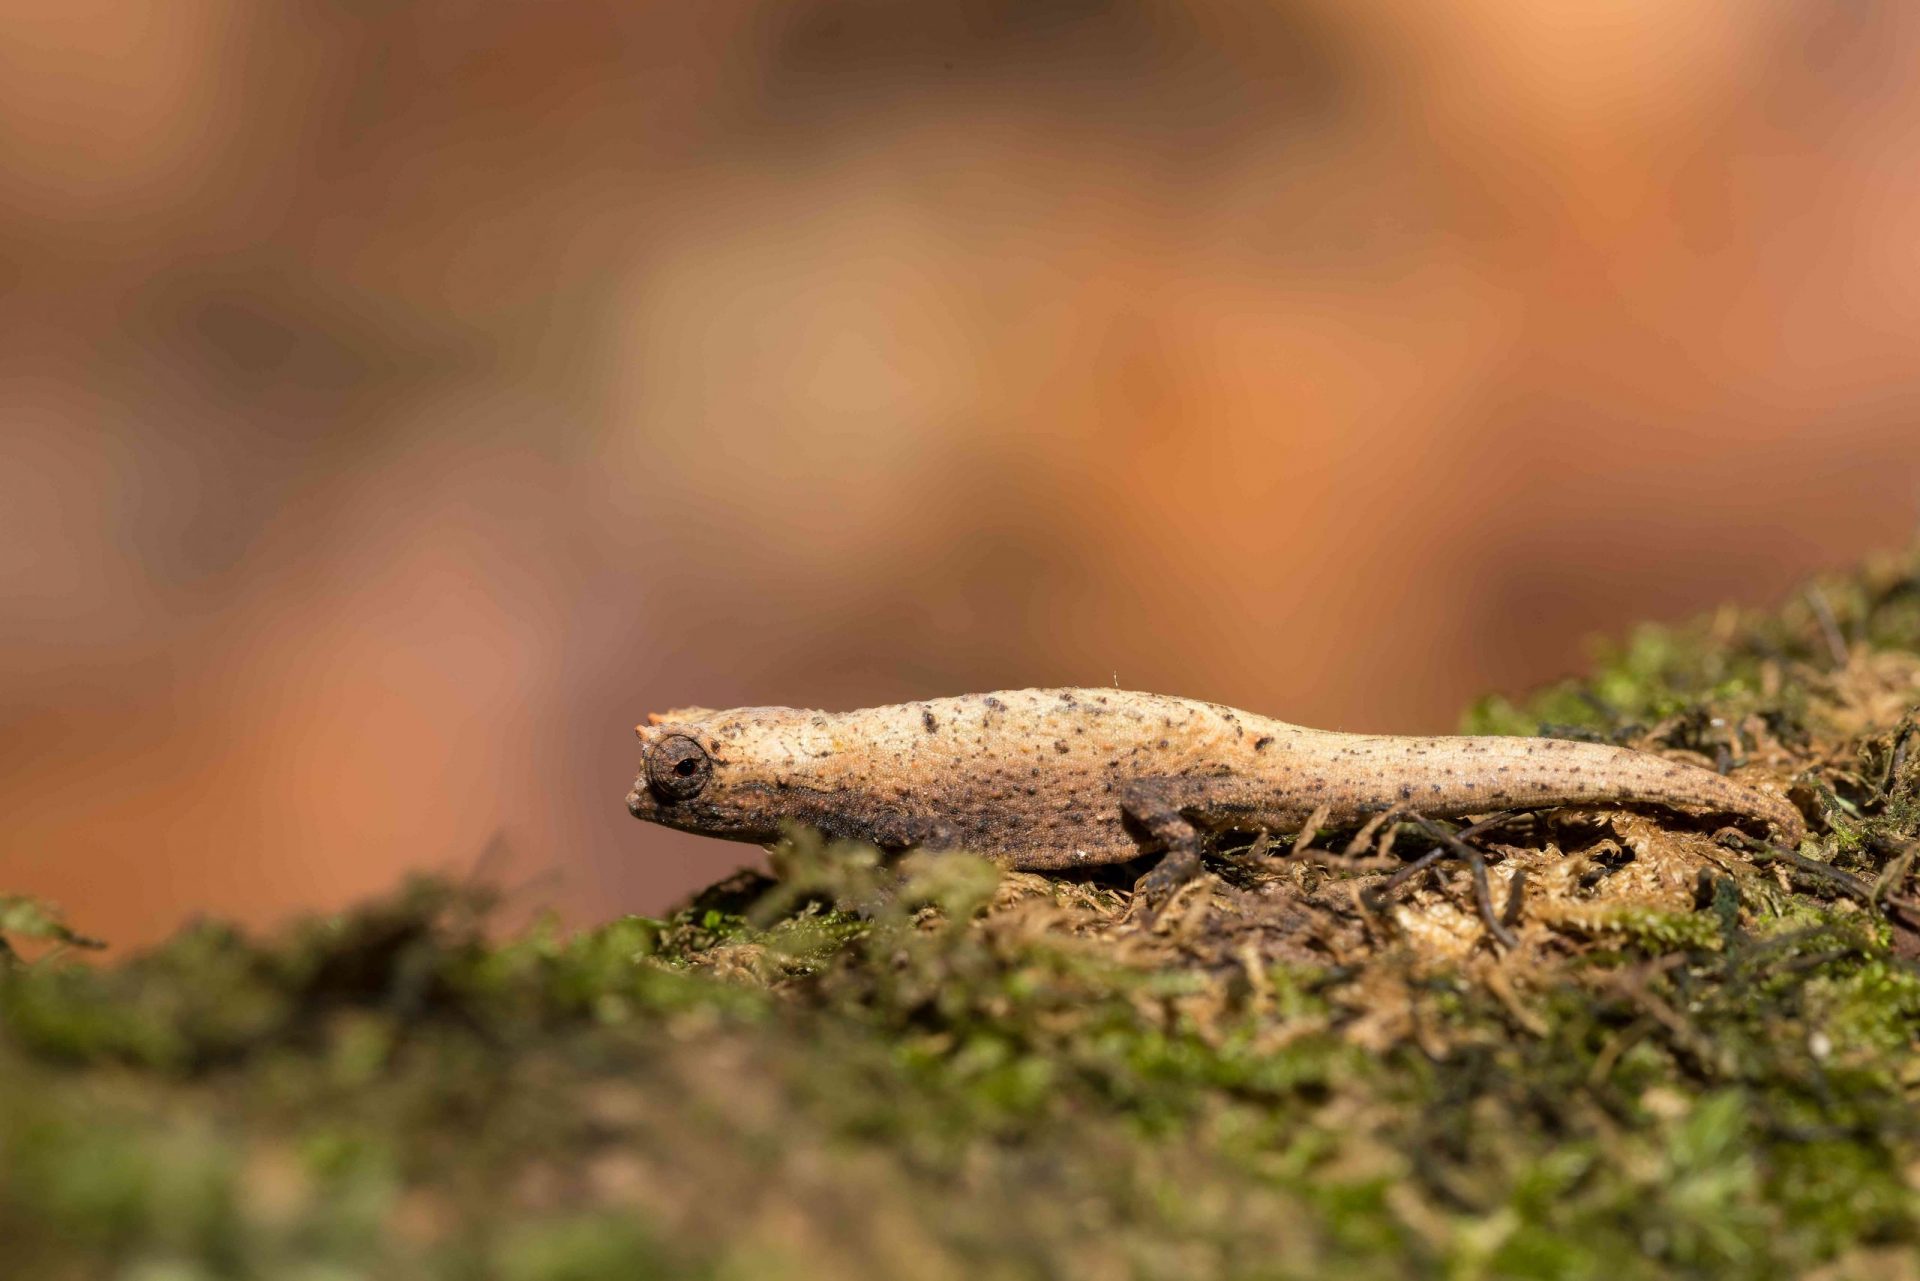 Diminuto camaleón Brookesia micra en la hierba